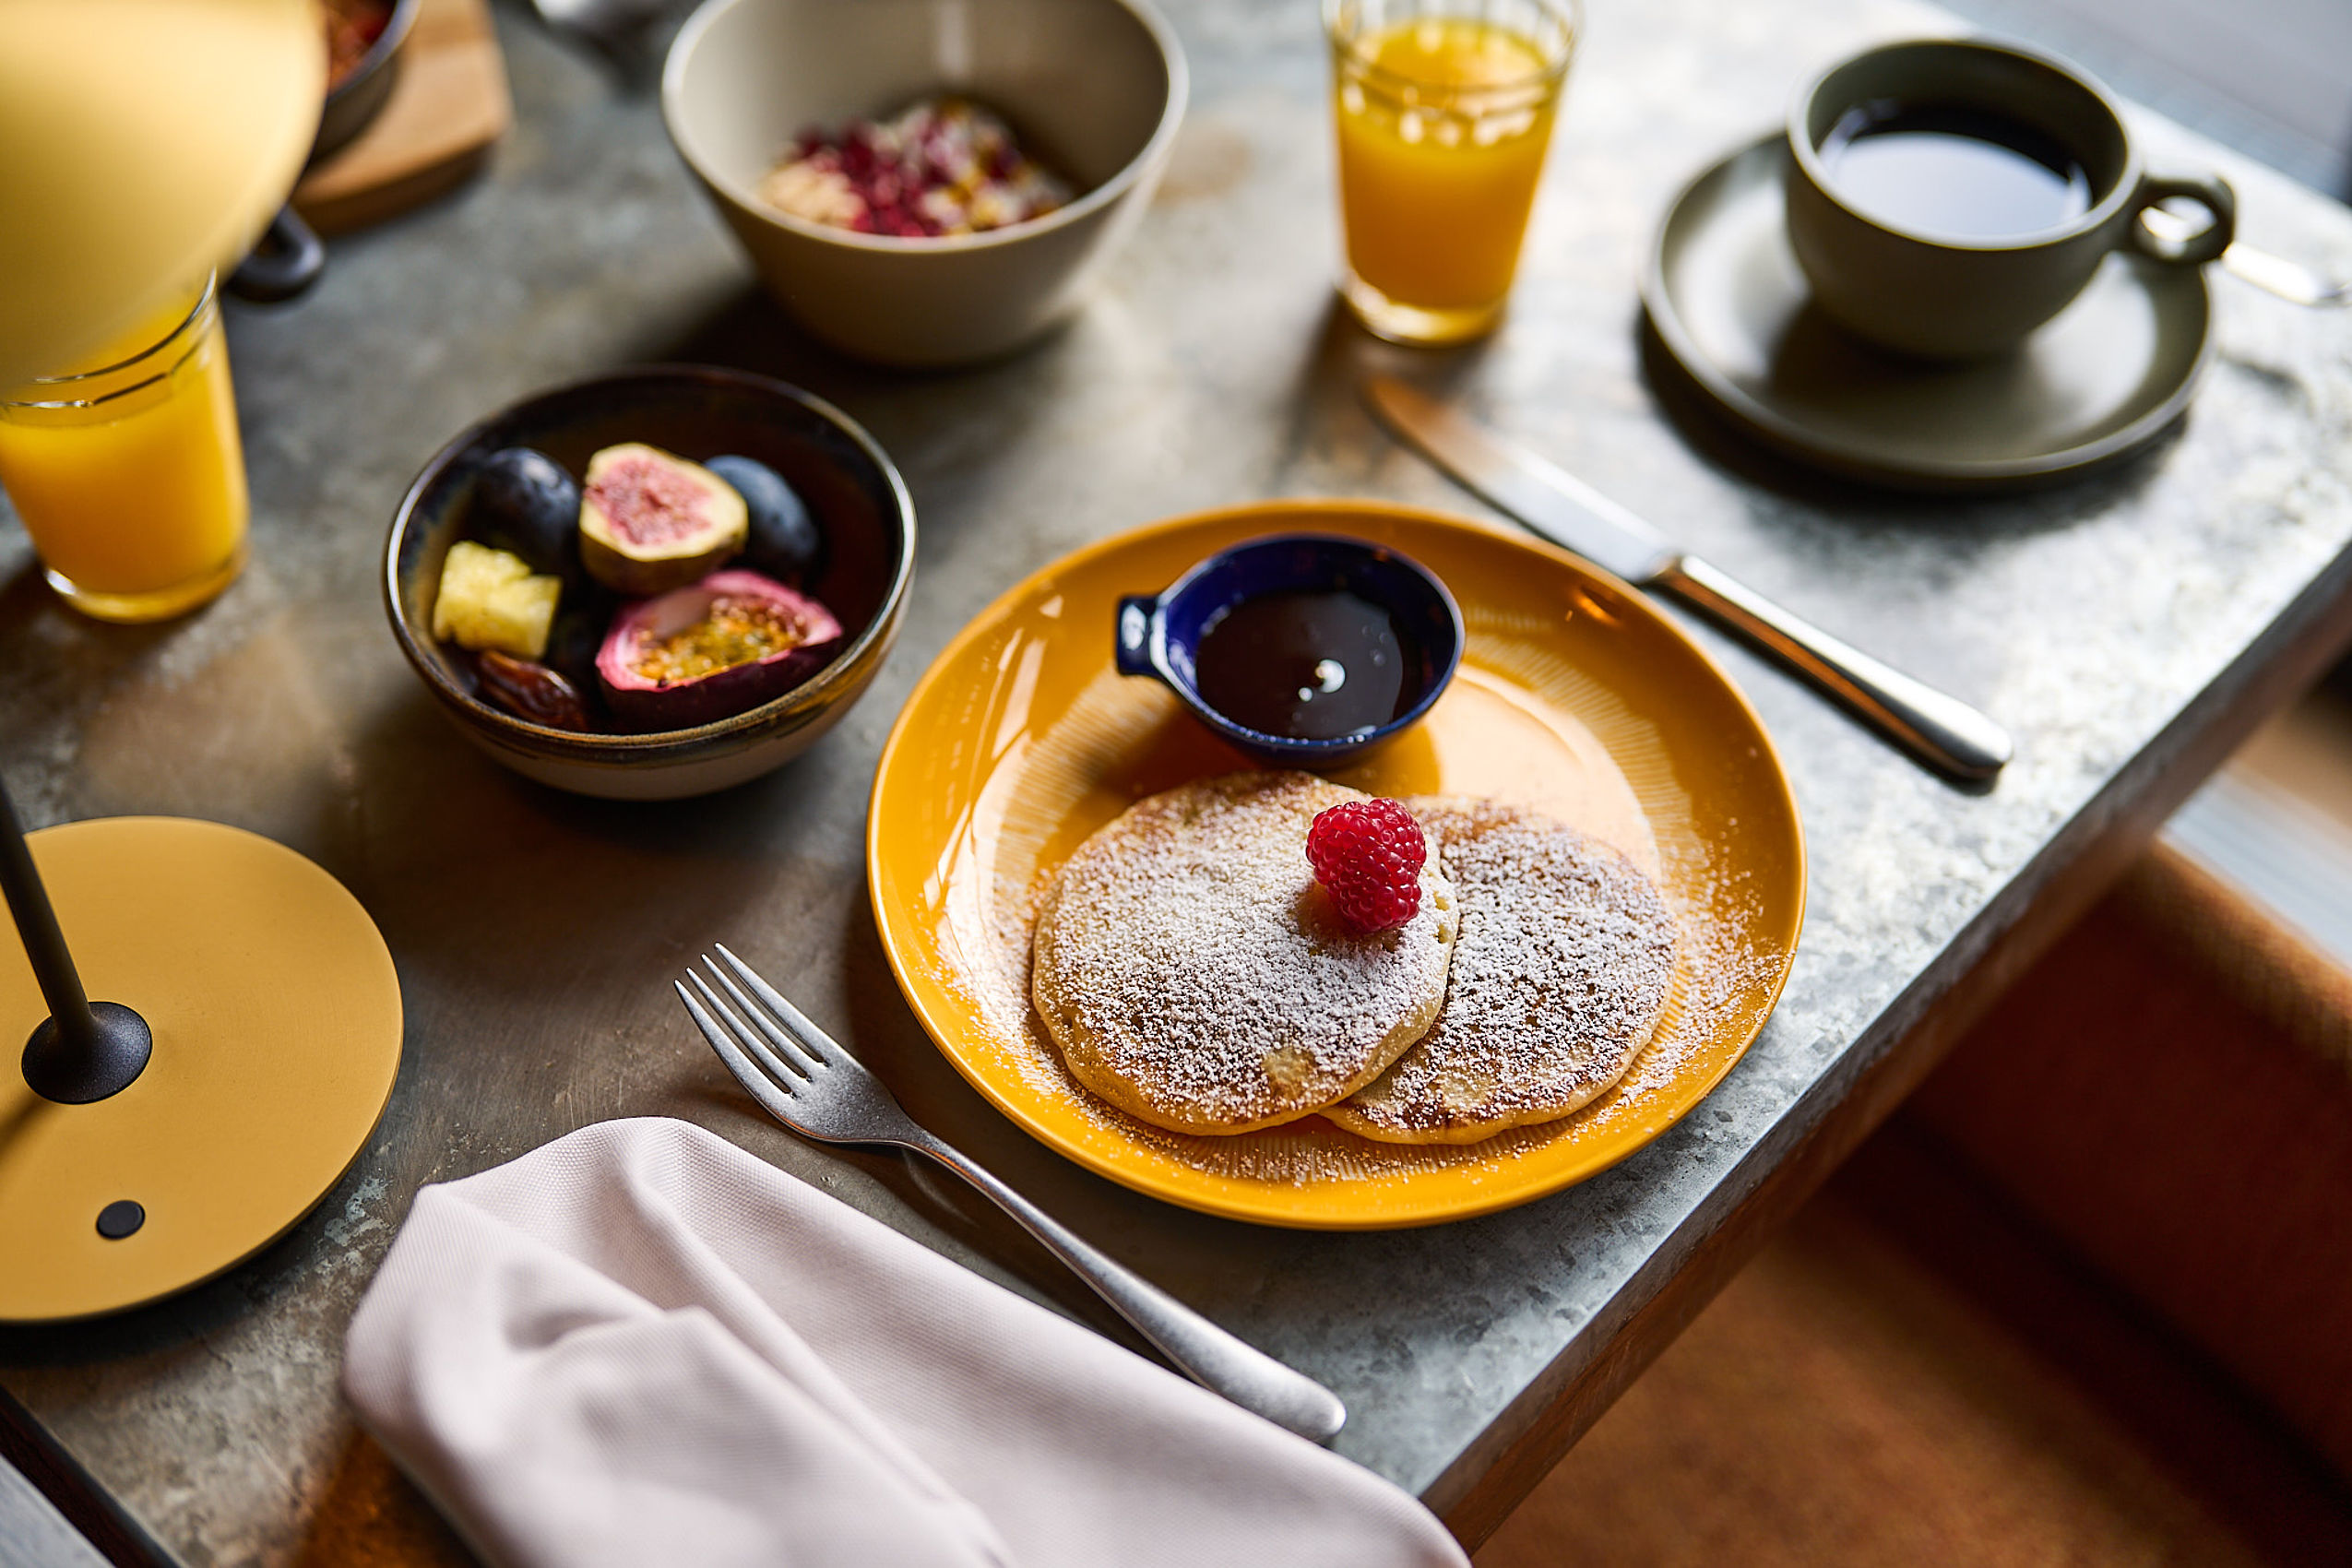 Zwei Pancakes mit Ahornsirup auf einem gelben Teller, dazu Feigen und eine Tasse Kaffee